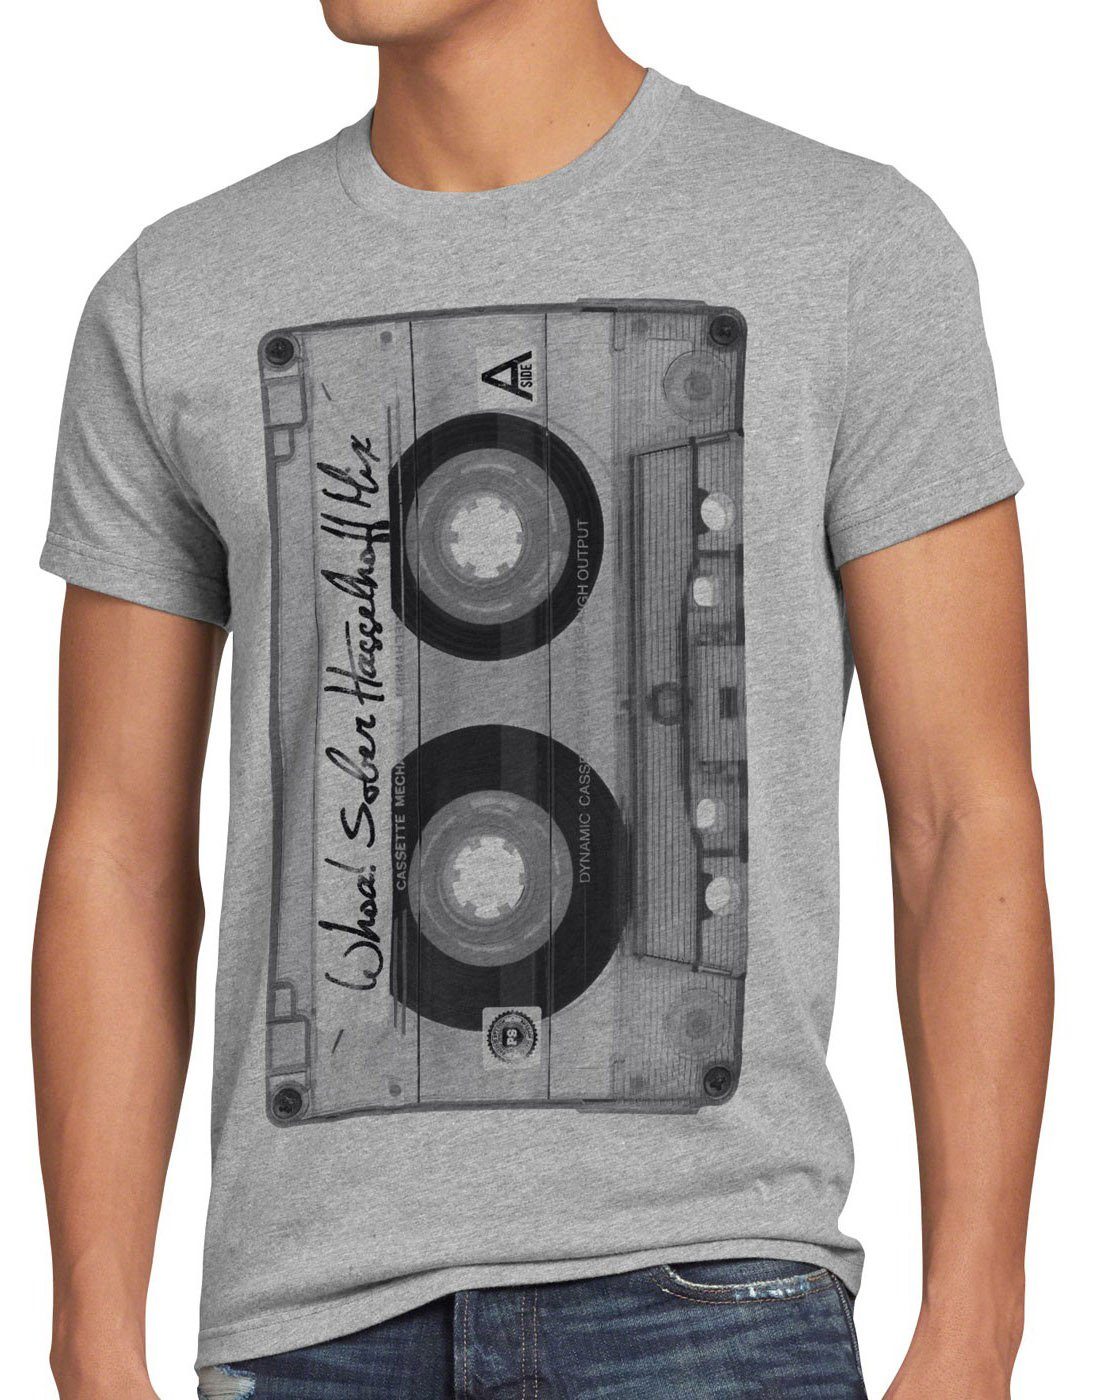 Herren mc M meliert retro Print-Shirt XXXL L DJ disco 90er Kassetten XL style3 T-Shirt grau XXL S musik fotodruck 80er